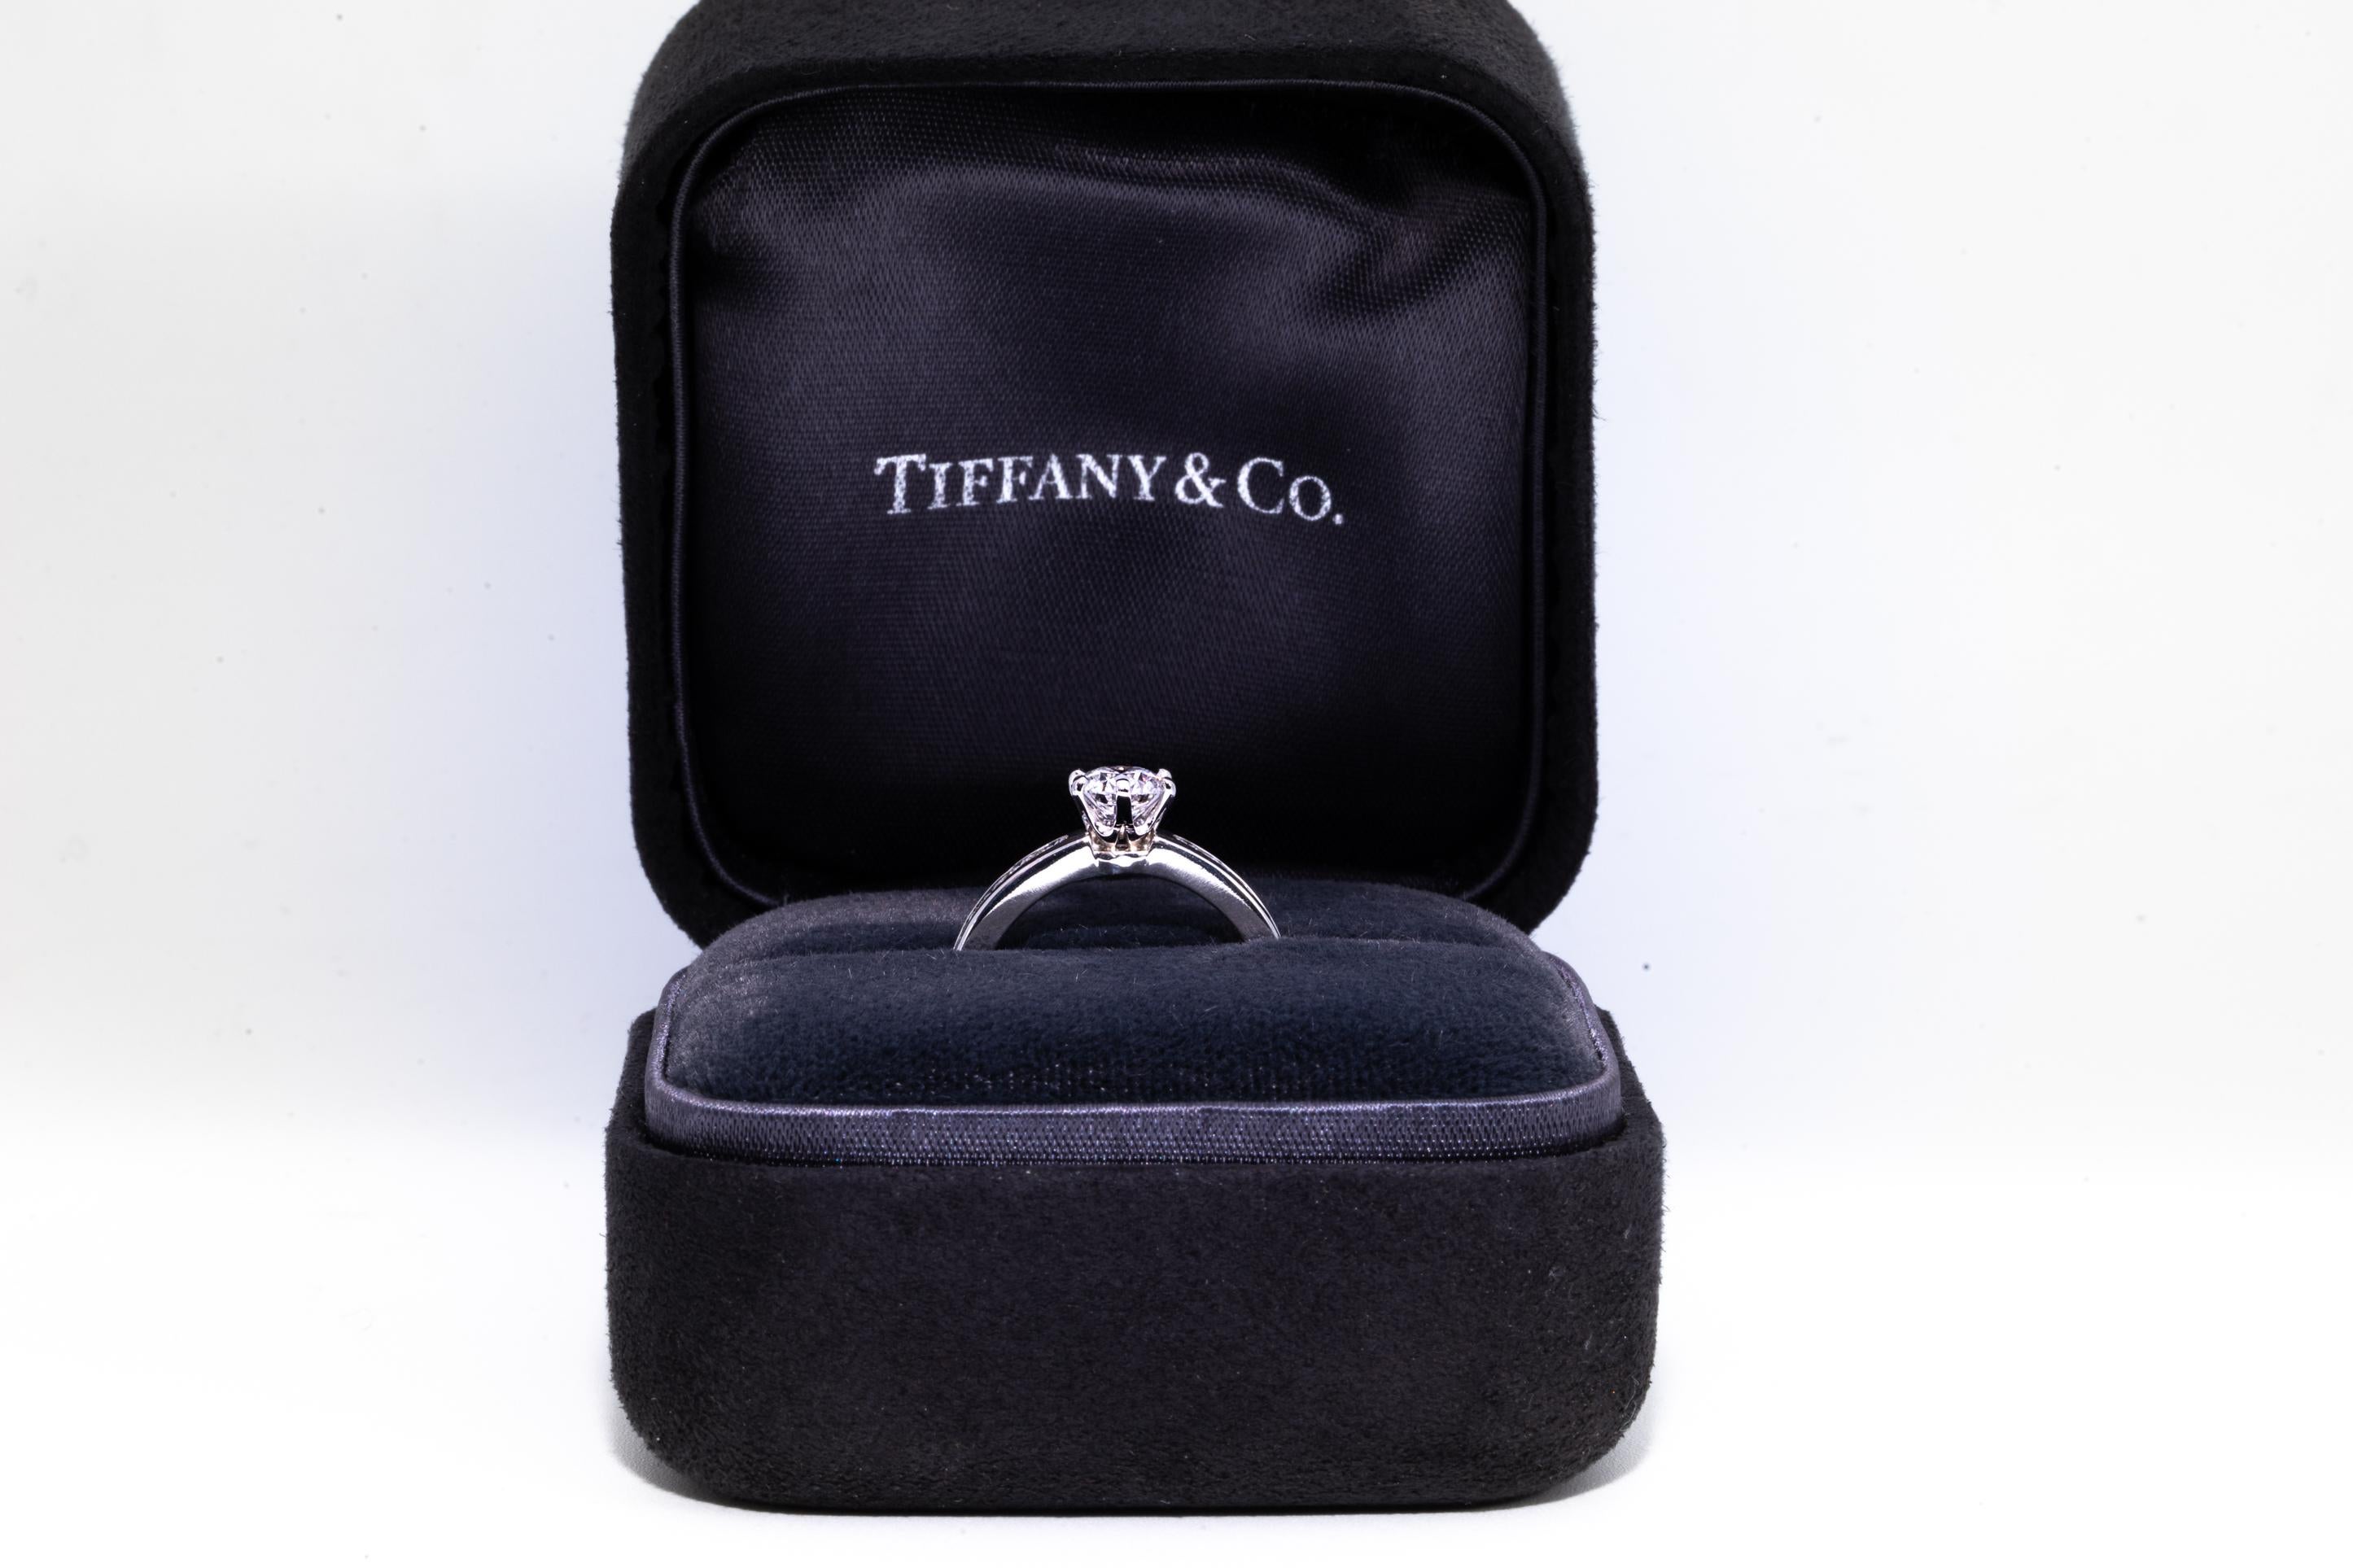 Tiffany & Co Diamond Engagement Solitaire unterzeichnet von Tiffany & Co. mit einem .73 Karat Center:: abgestuft E Farbe und VS1 Klarheit. 
Hervorgehoben mit 10 Kanal gesetzt brillant geschliffenen runden Diamanten wiegen etwa .35 Cts Total
Mit